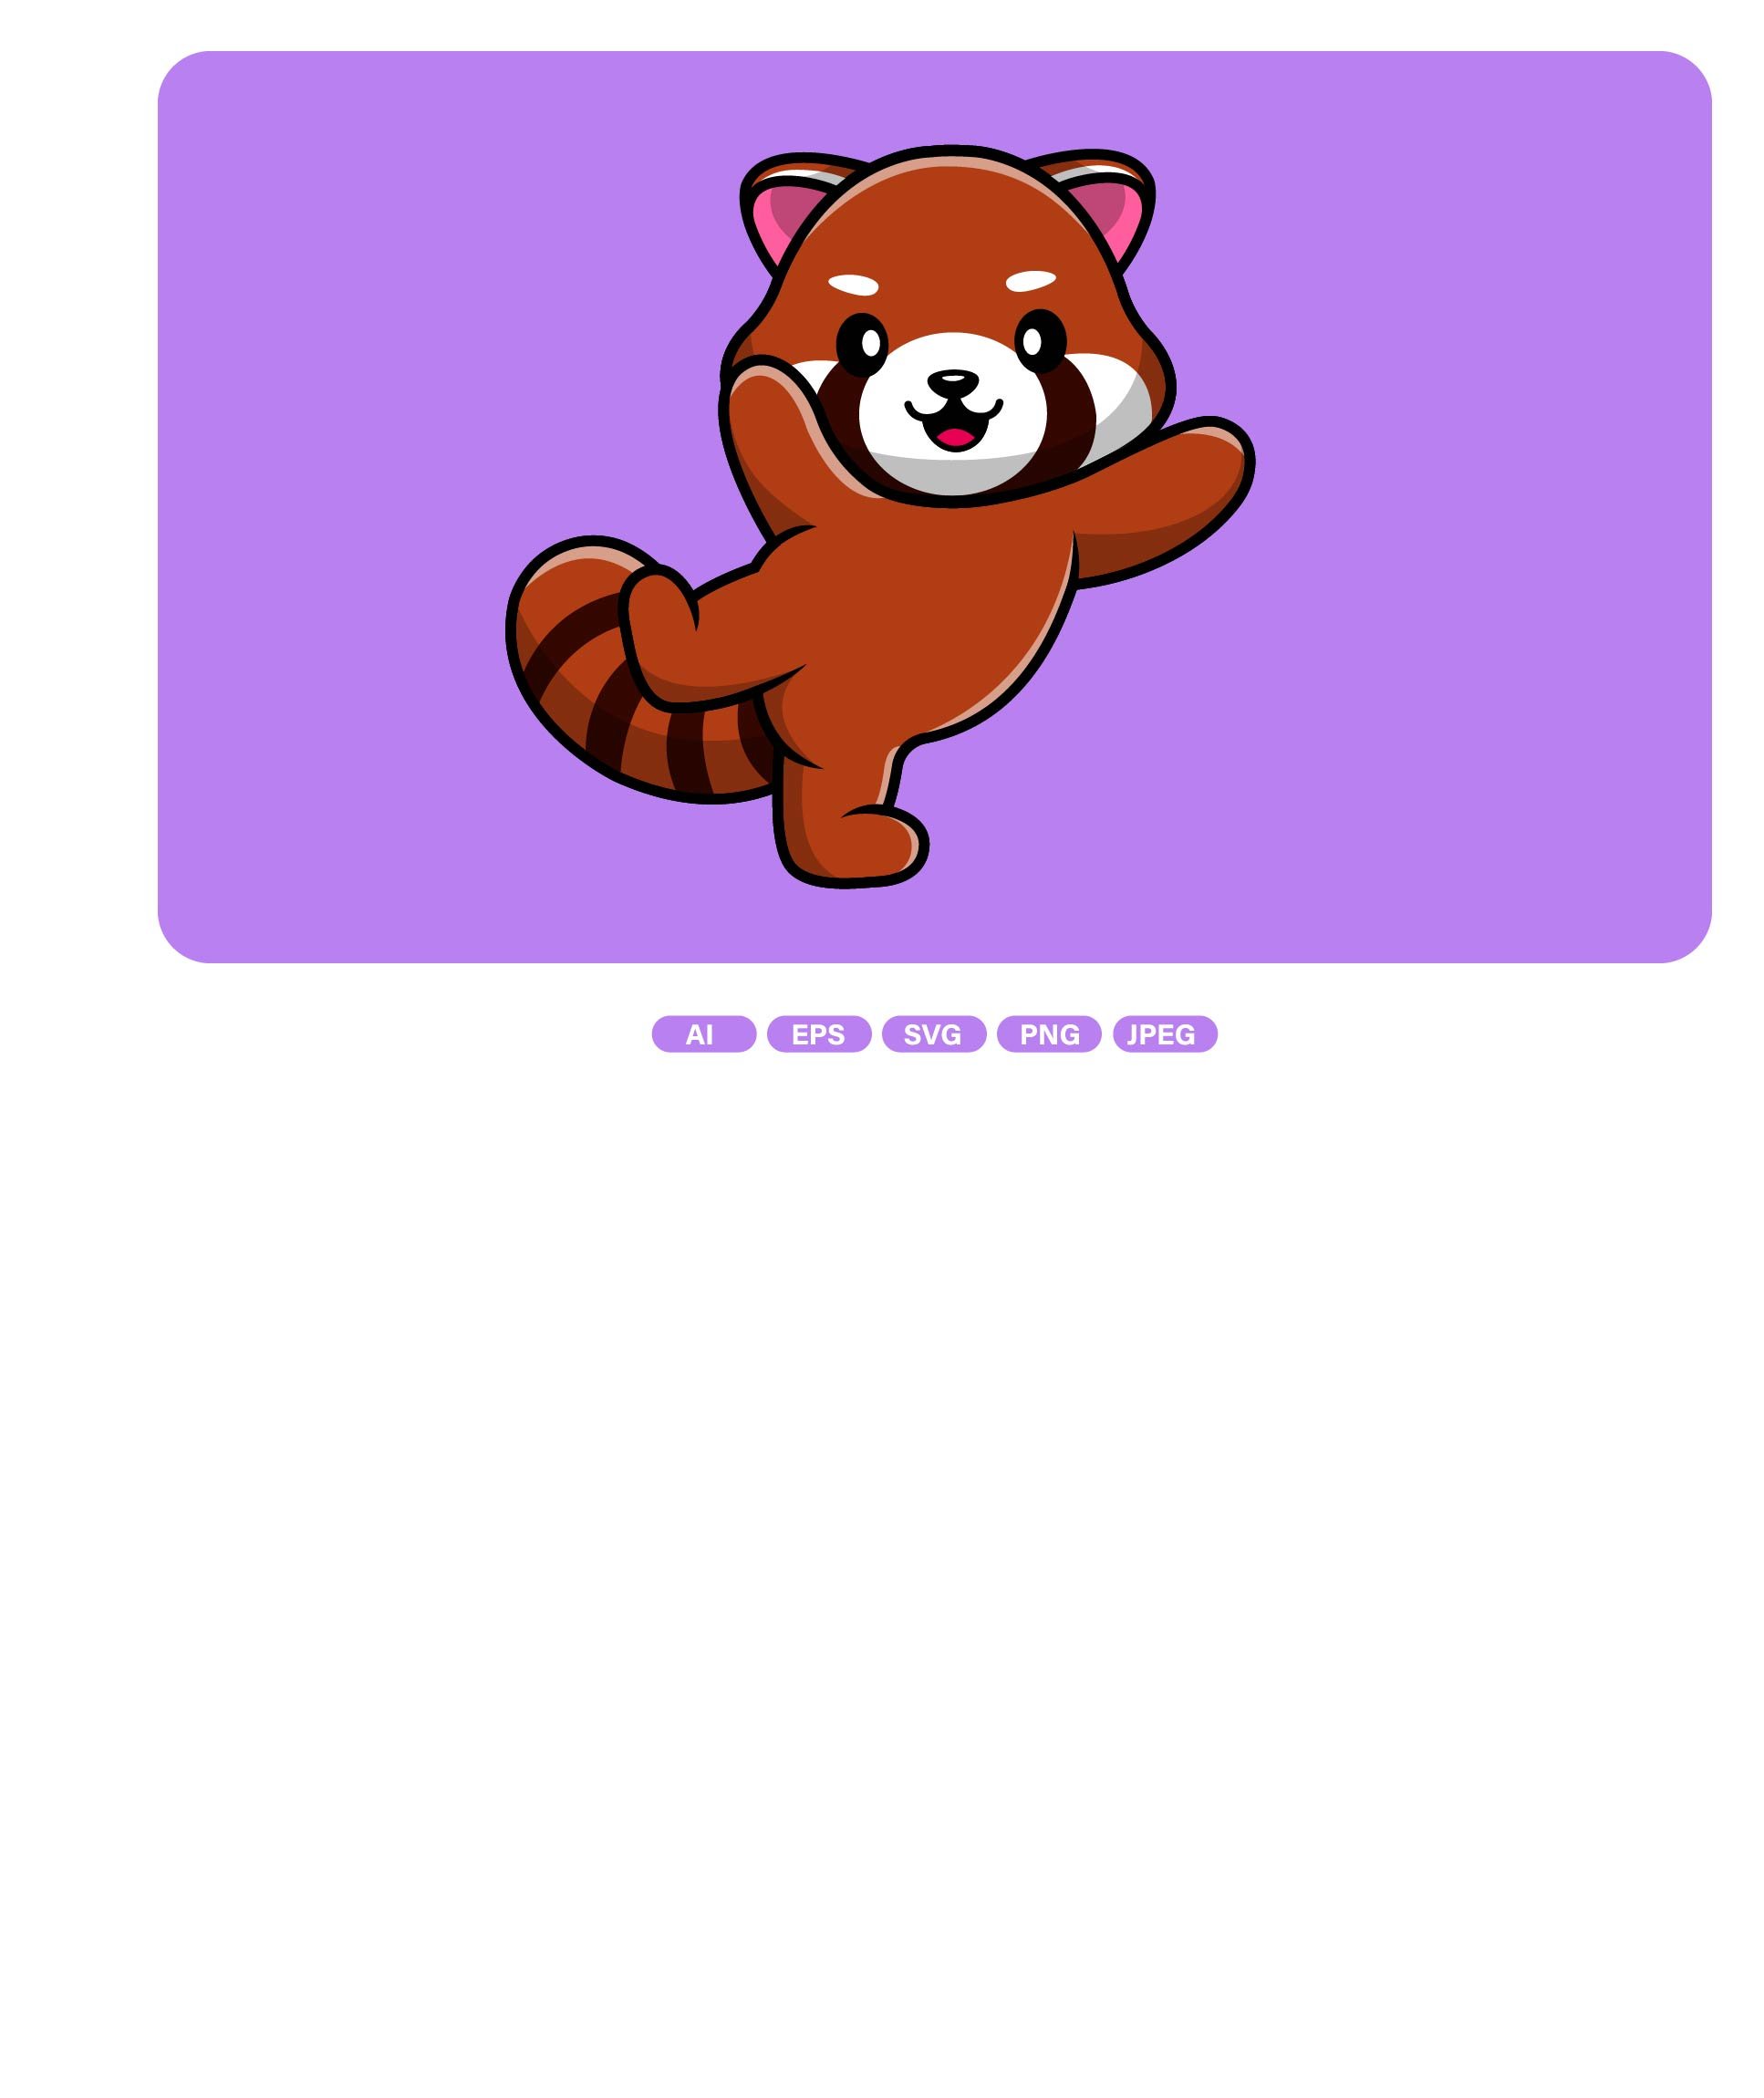 Cute Red Panda Cartoon cover image.